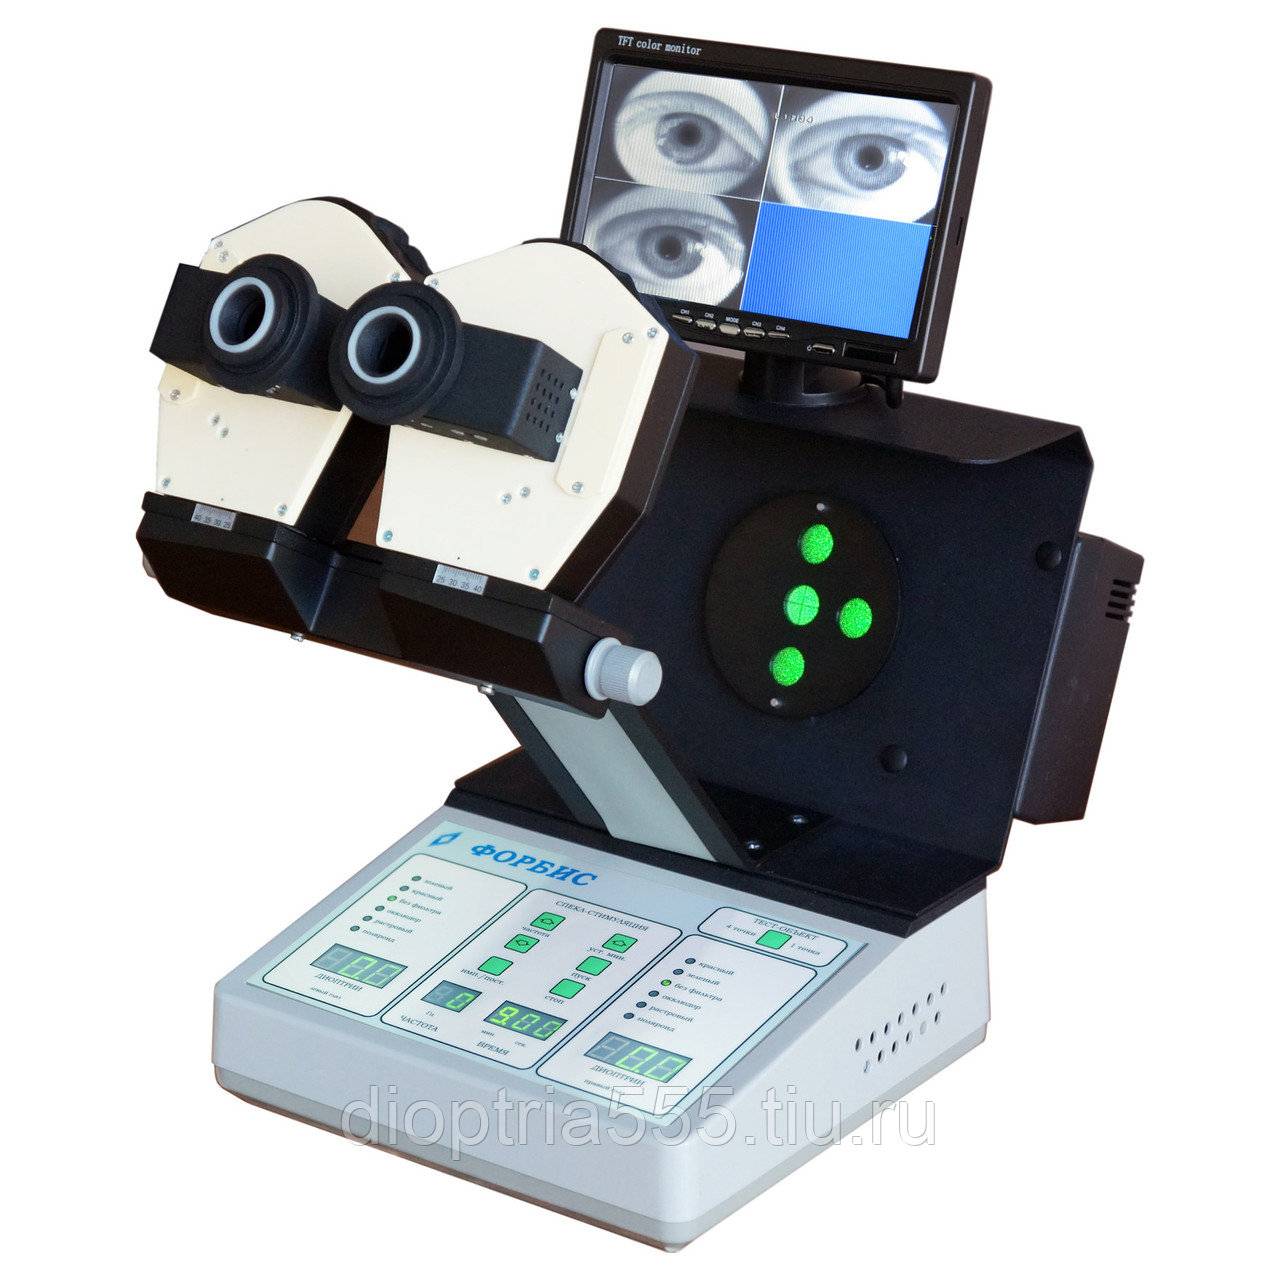 Приборы и аппараты для лечения глаз и восстановления зрения - каталог, отзывы, цены и где купить